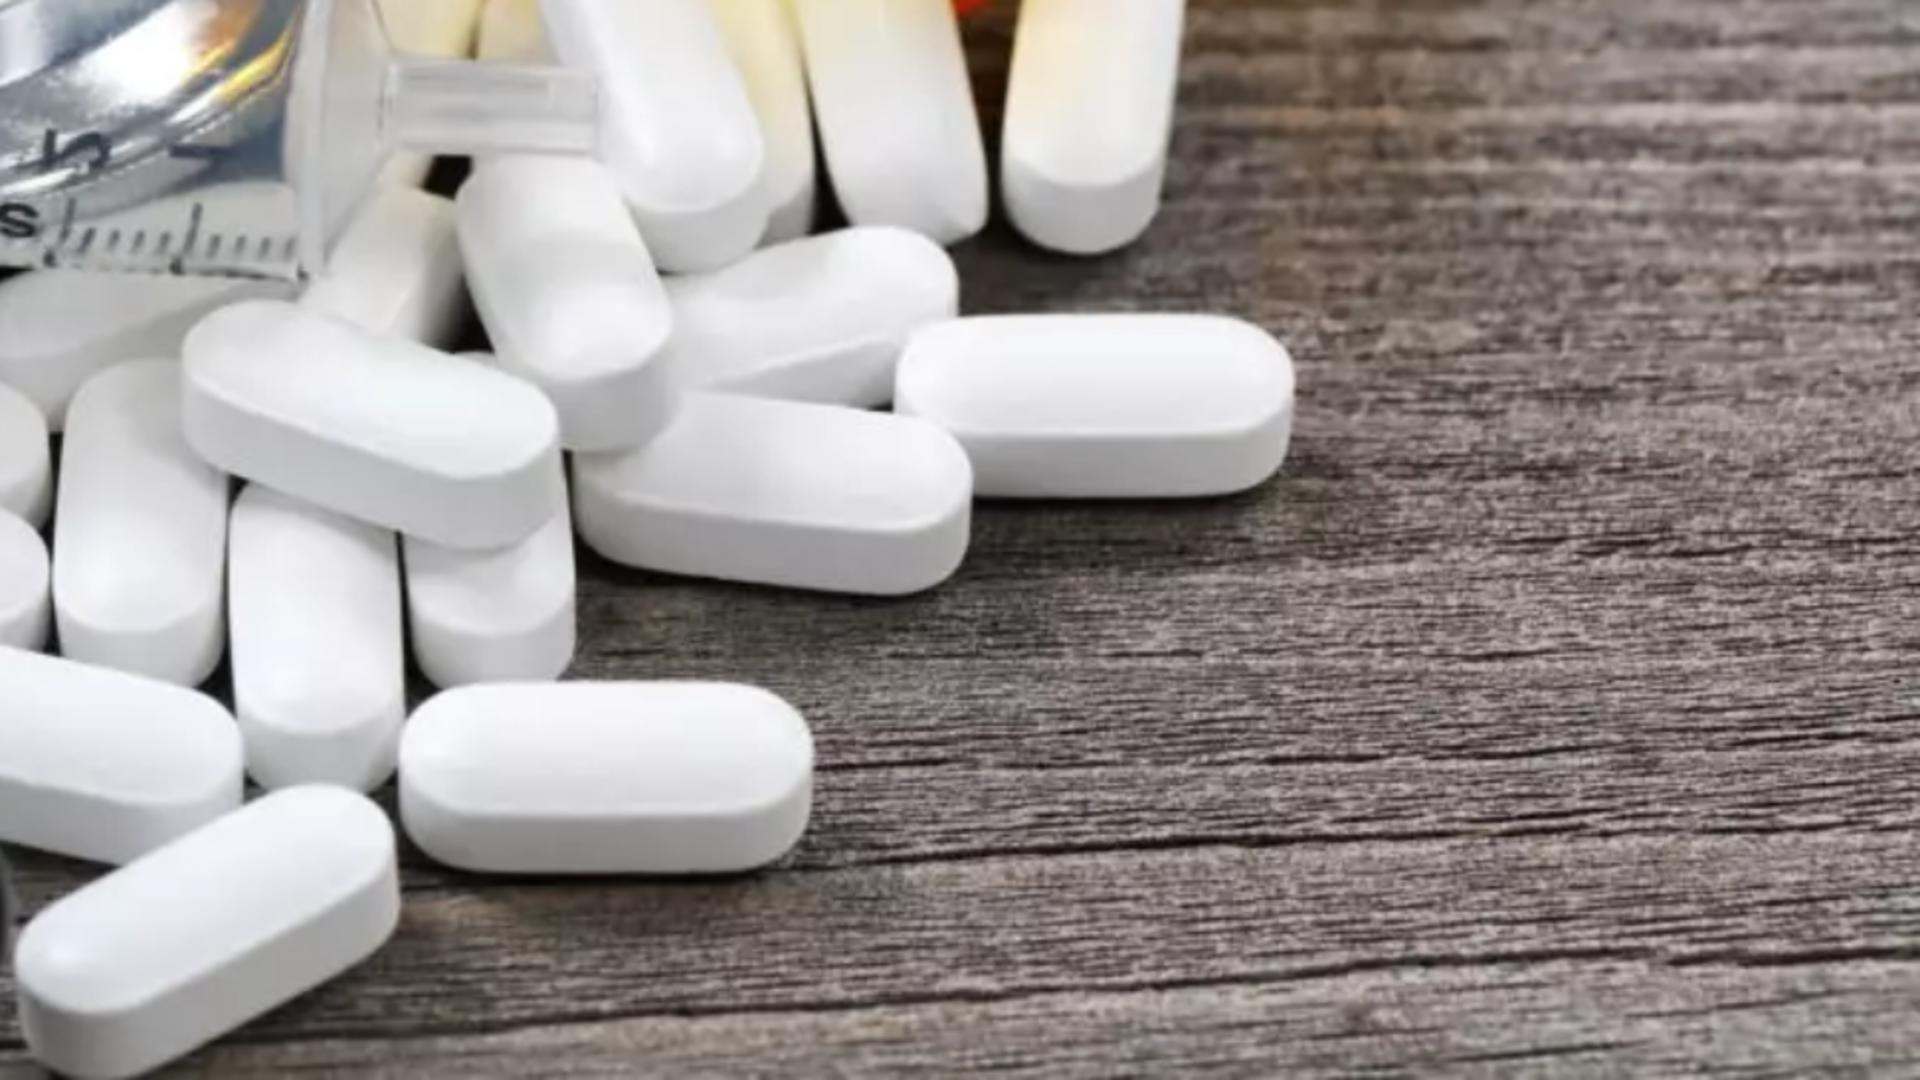 Controale la sânge în peste 500 de farmacii care eliberează oxicodonă și fentanil - Ministerul Sănătății, anunț despre drogul mortal